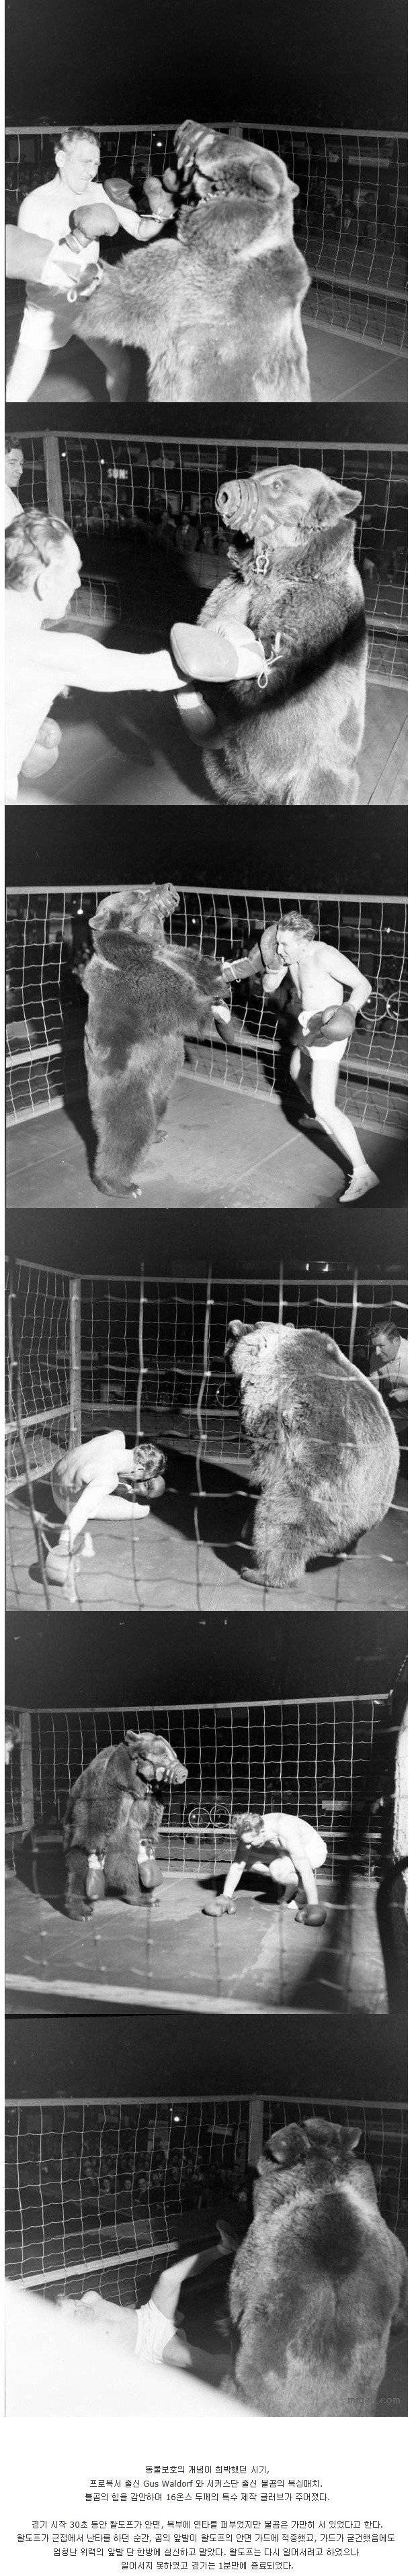 곰 VS 인간 복싱 대결.1.jpg